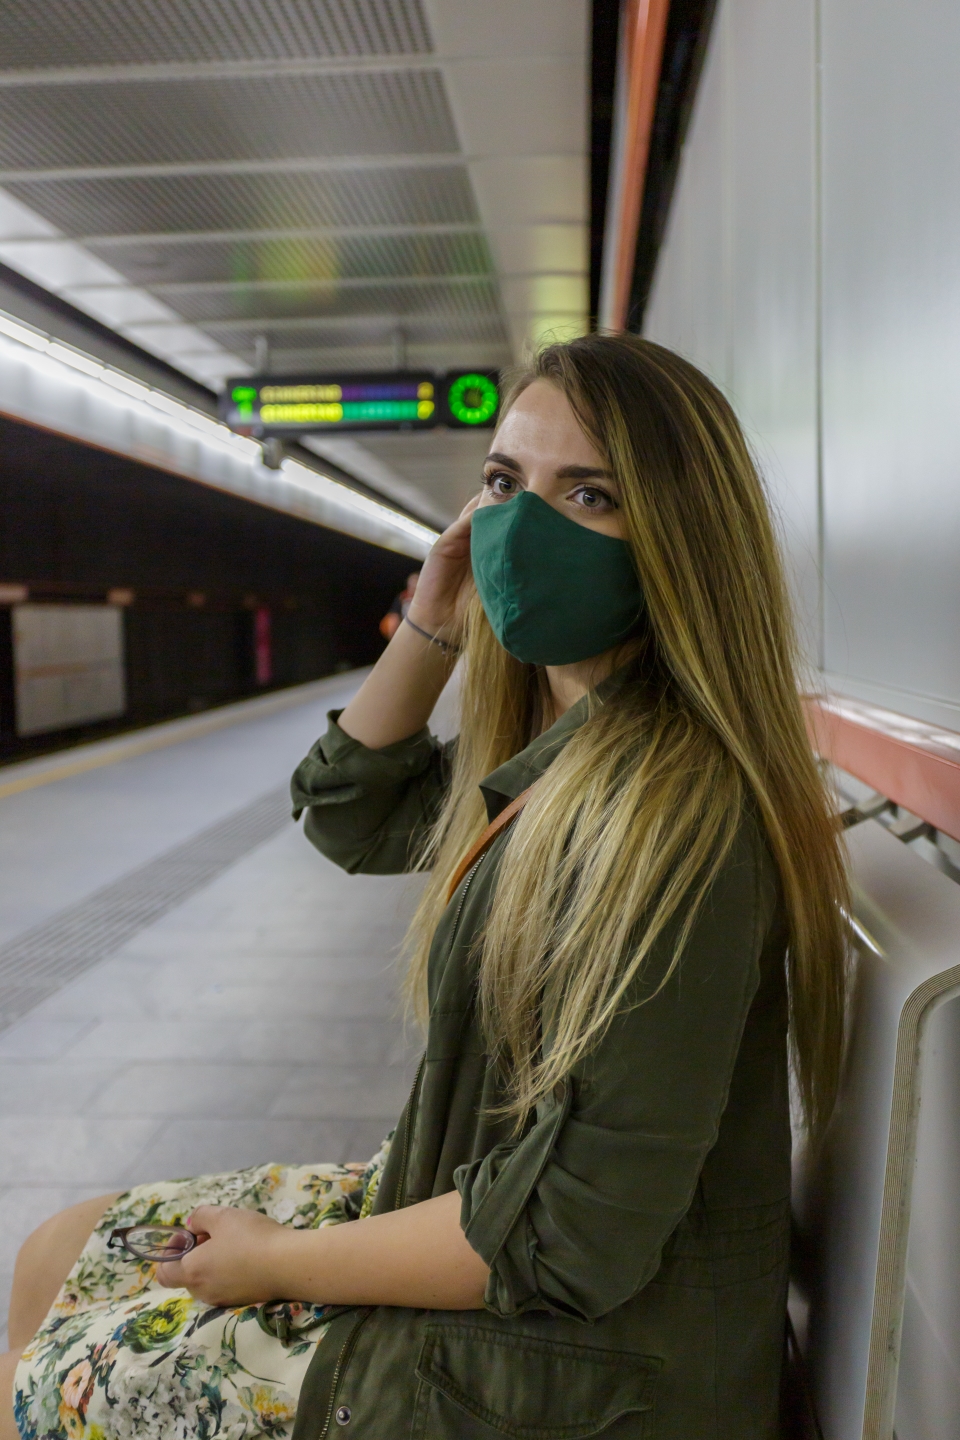 In den öffentlichen Verkehrsmitteln gilt auf Grund der Corona-Krise die Maskentragepflicht.